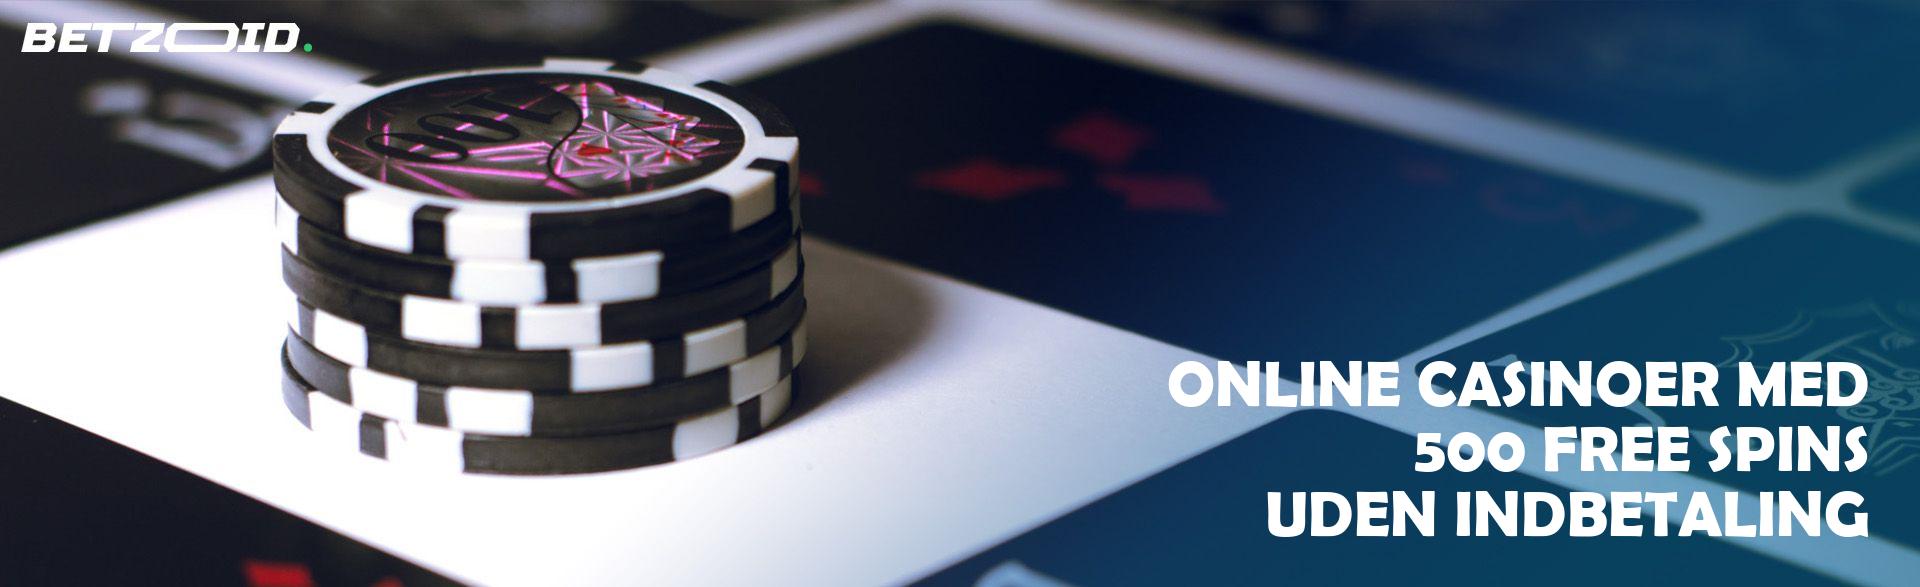 Online Casinoer med 500 Free Spins uden Indbetaling.